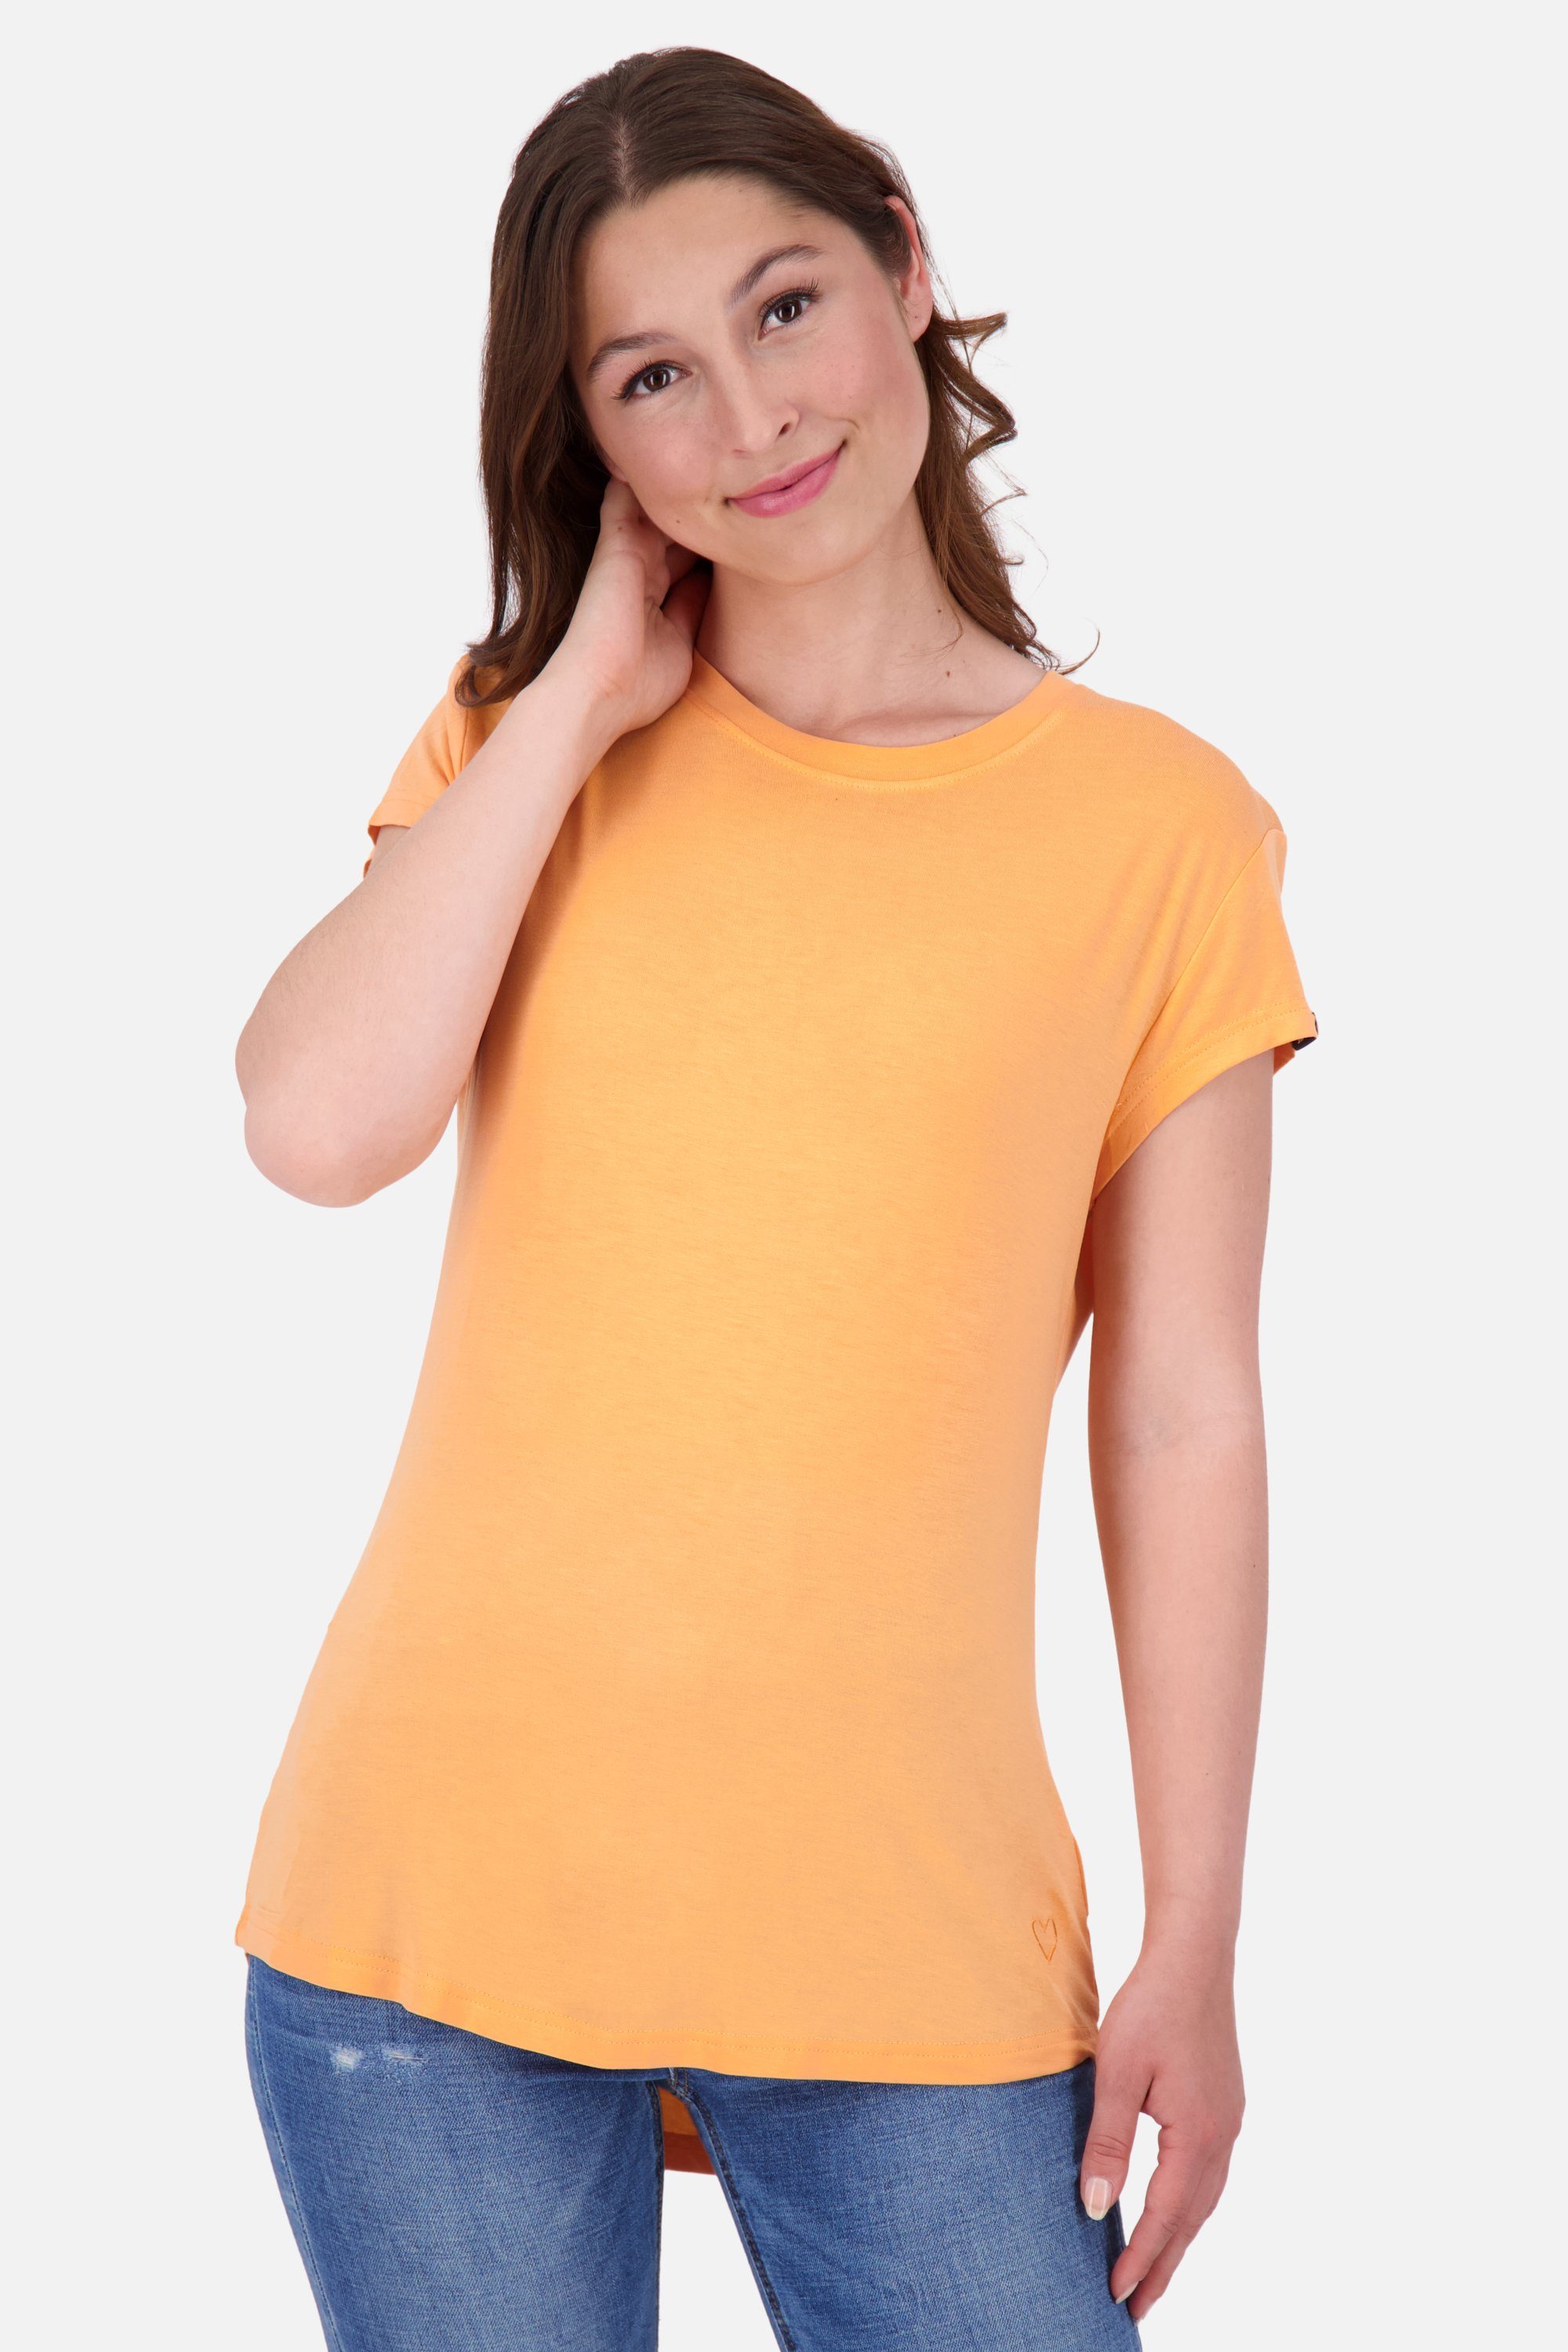 [Versand täglich außer an Feiertagen] Shirt Shirt MimmyAK Kickin Alife Rundhalsshirt tangerine Damen & Kurzarmshirt, A